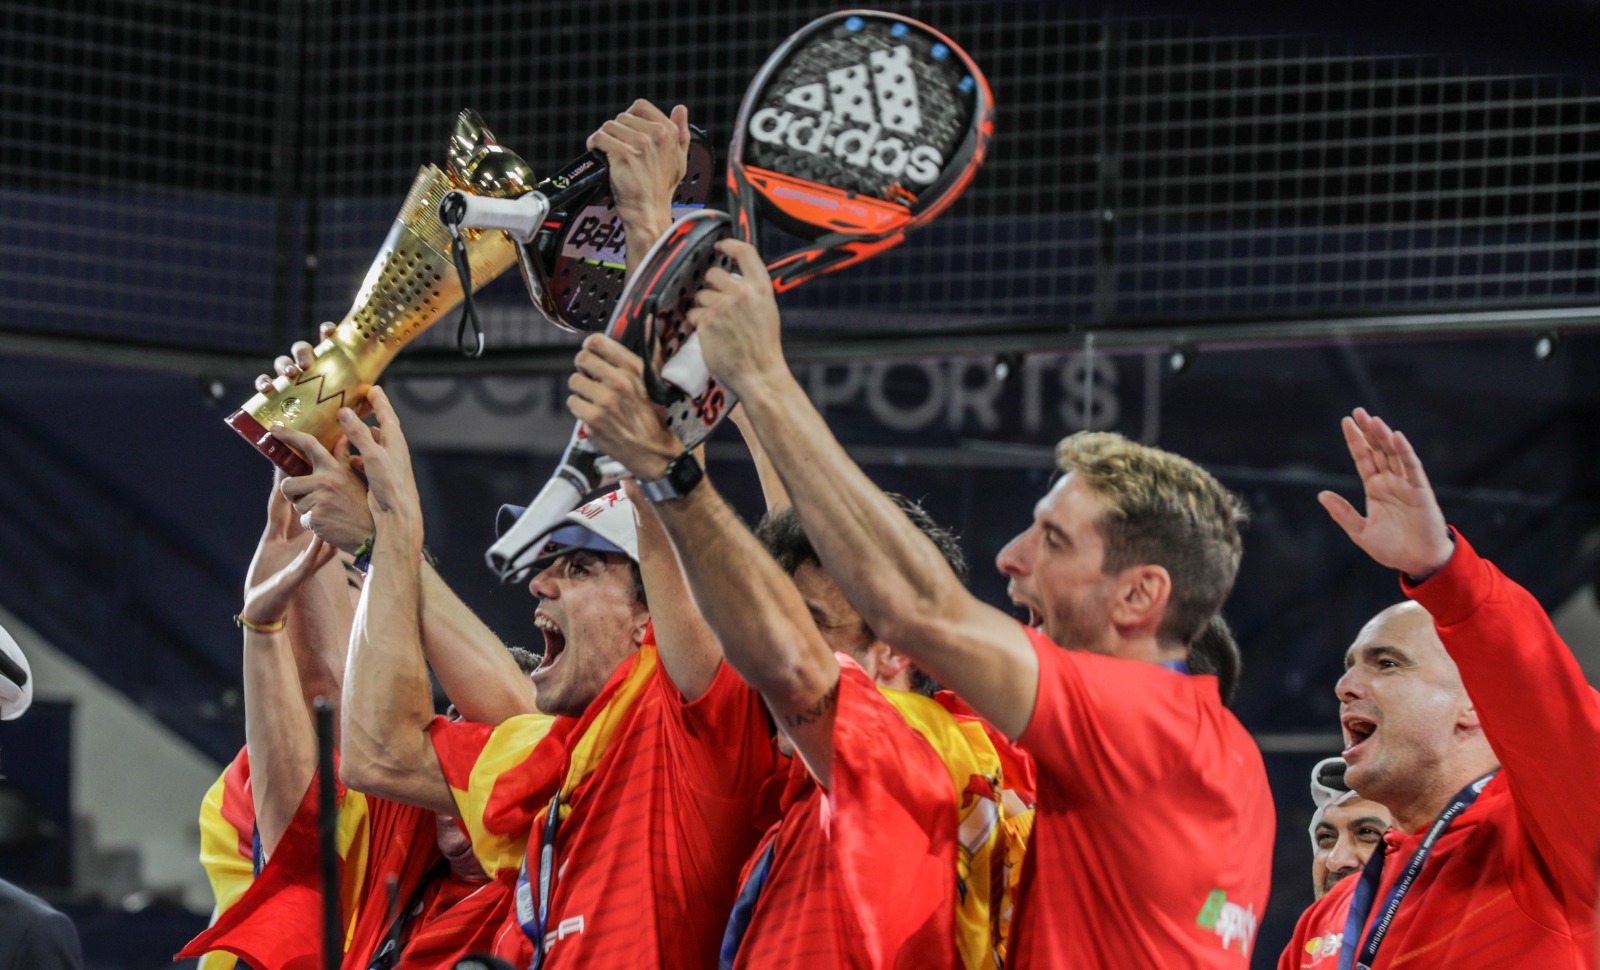 L'alegria espanyola victòria campiona del món padel qatar 2020